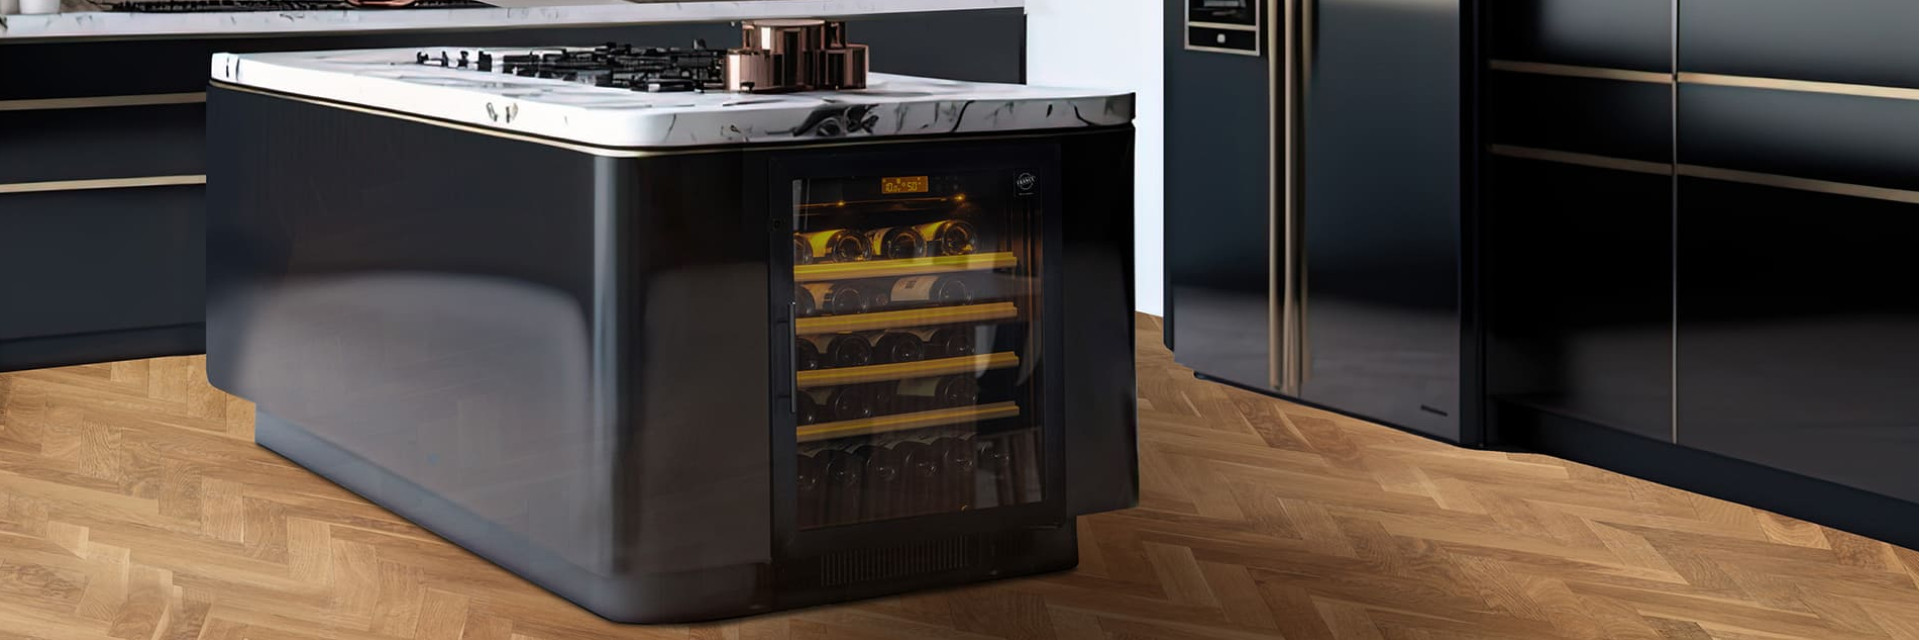 Ein eingebauter Weinkeller unter der Arbeitsplatte einer modernen schwarzen Küche in einer Wohnung wie ein Minikühlschrank. Compact EuroCave